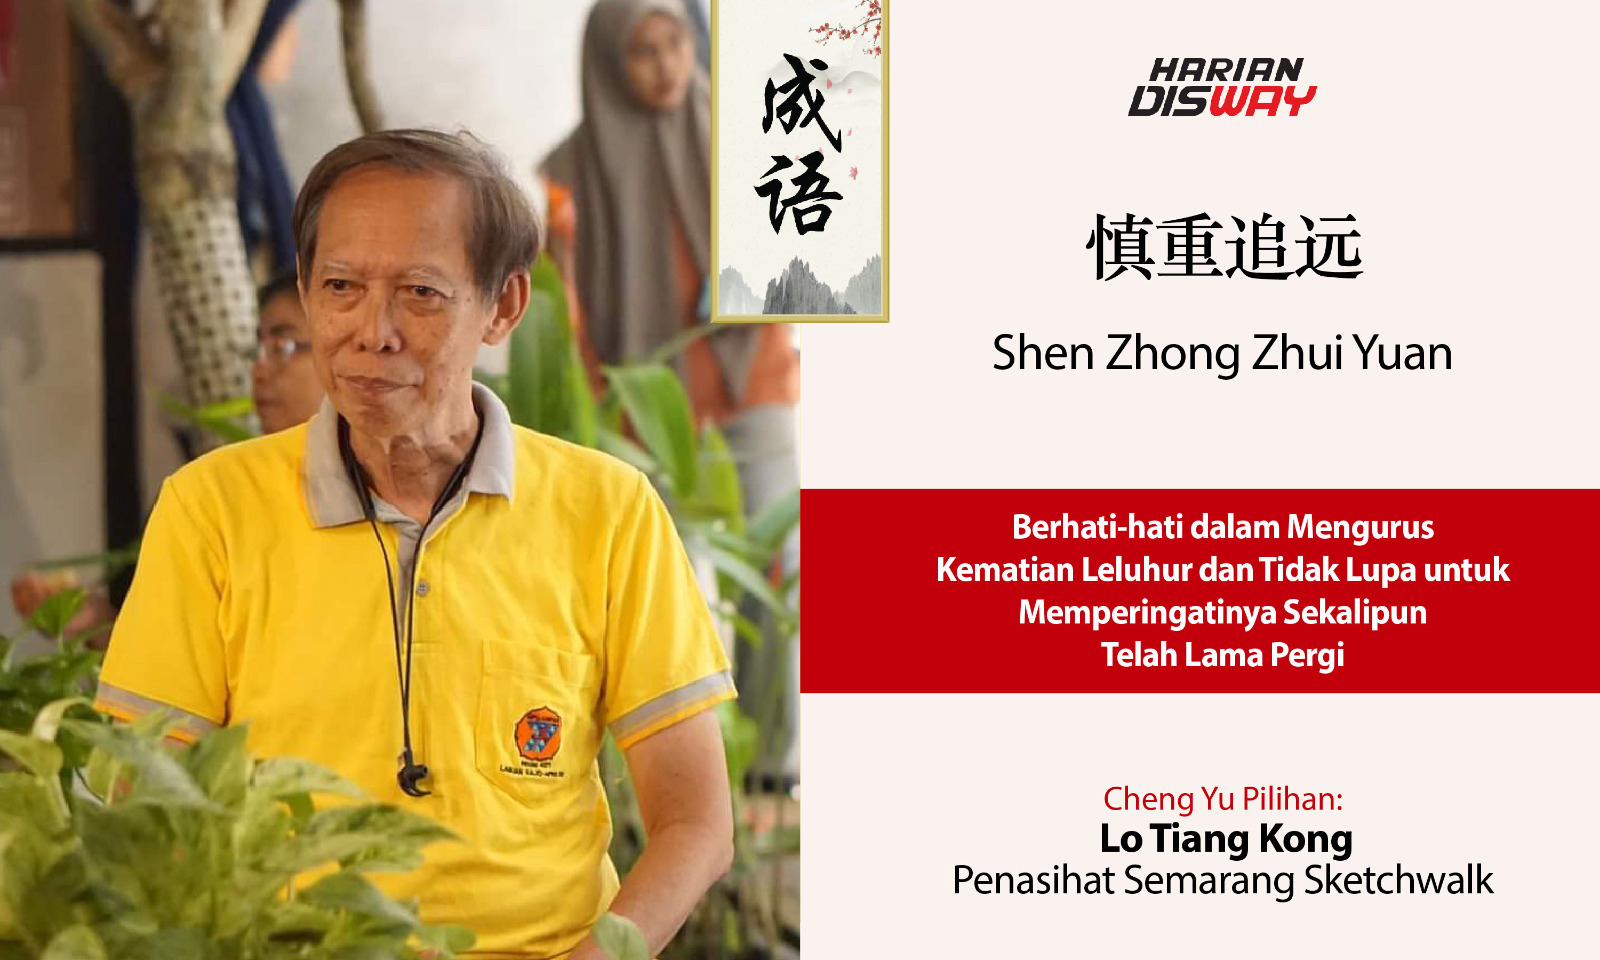 Cheng Yu Pilihan Penasihat Semarang Sketchwalk Lo Tiang Kong: Shen Zhong Zhui Yuan